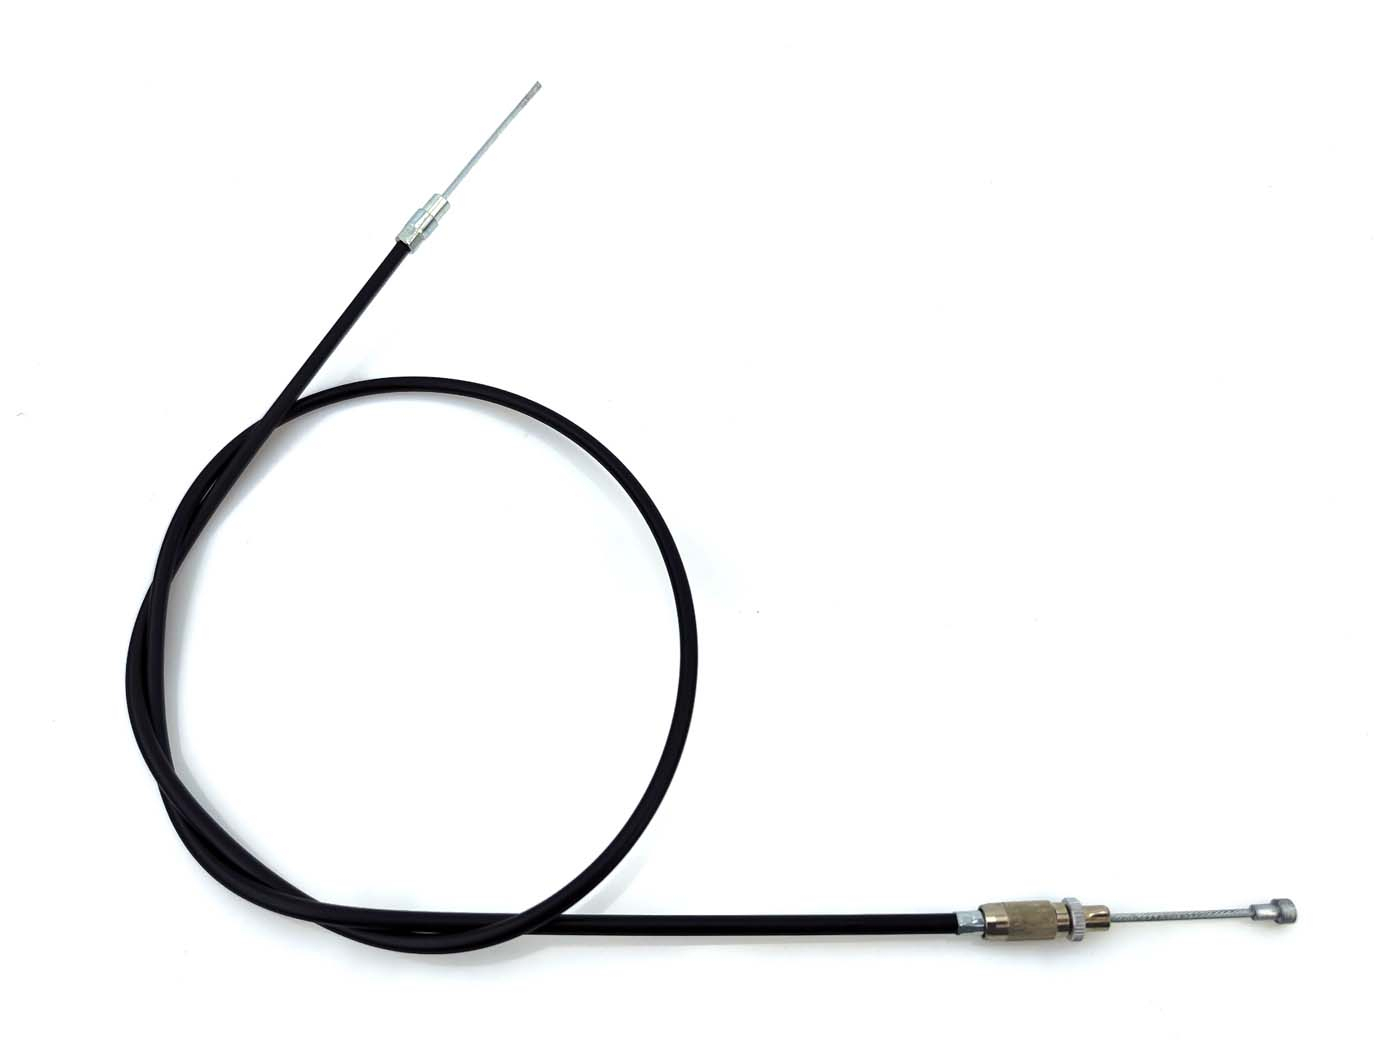 Handbrake Cable MOGA For Kreidler MF 1, 2, 4